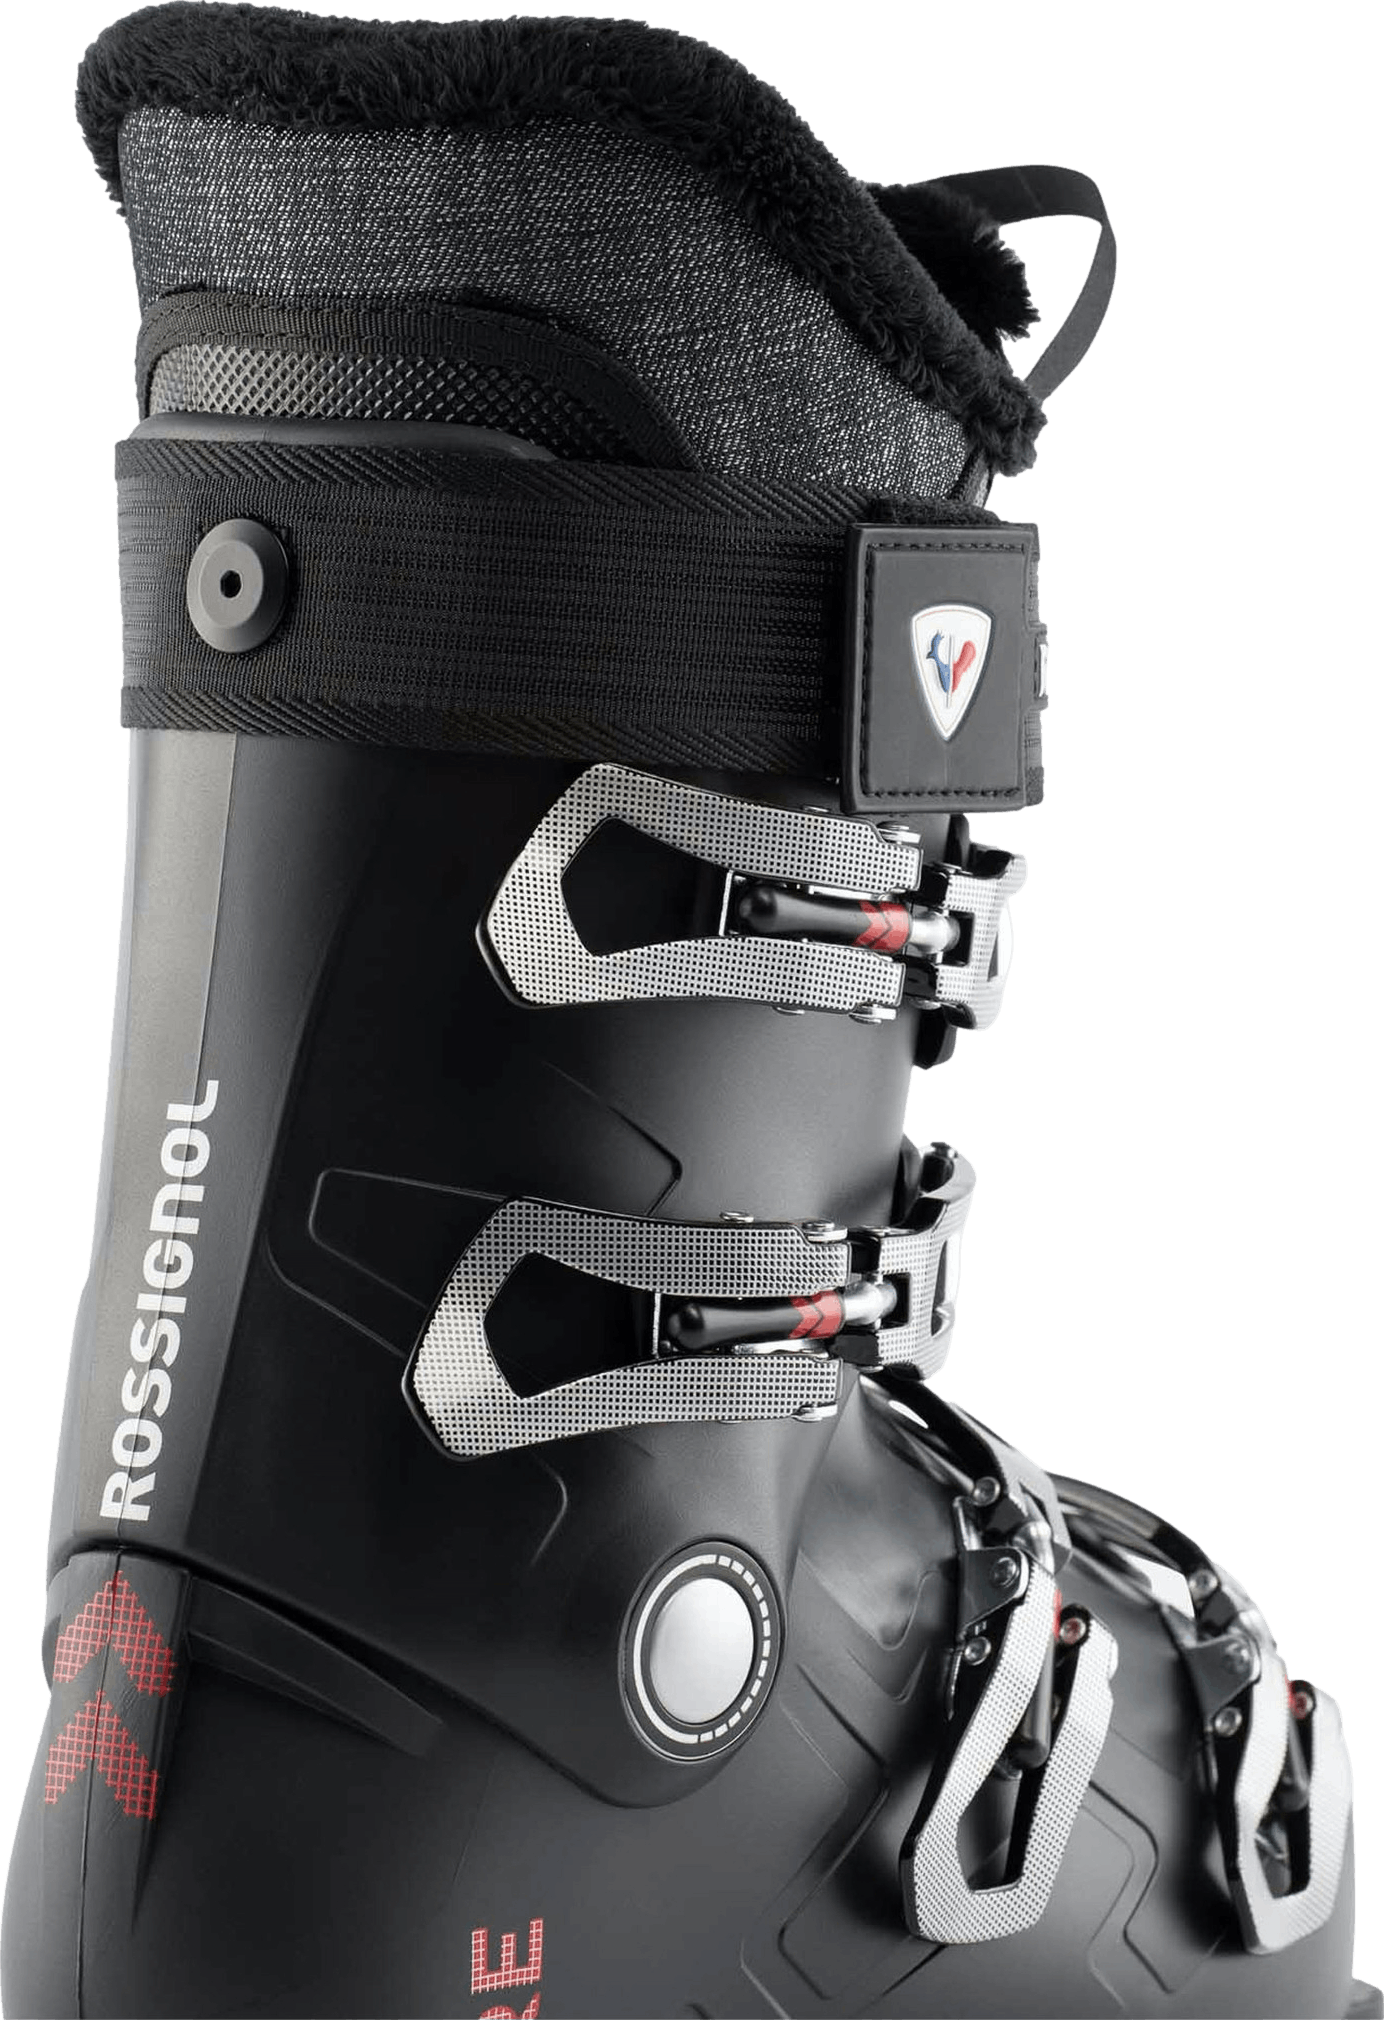 Rossignol Pure Comfort 60 Ski Boots · Women's · 2024 · 24.5